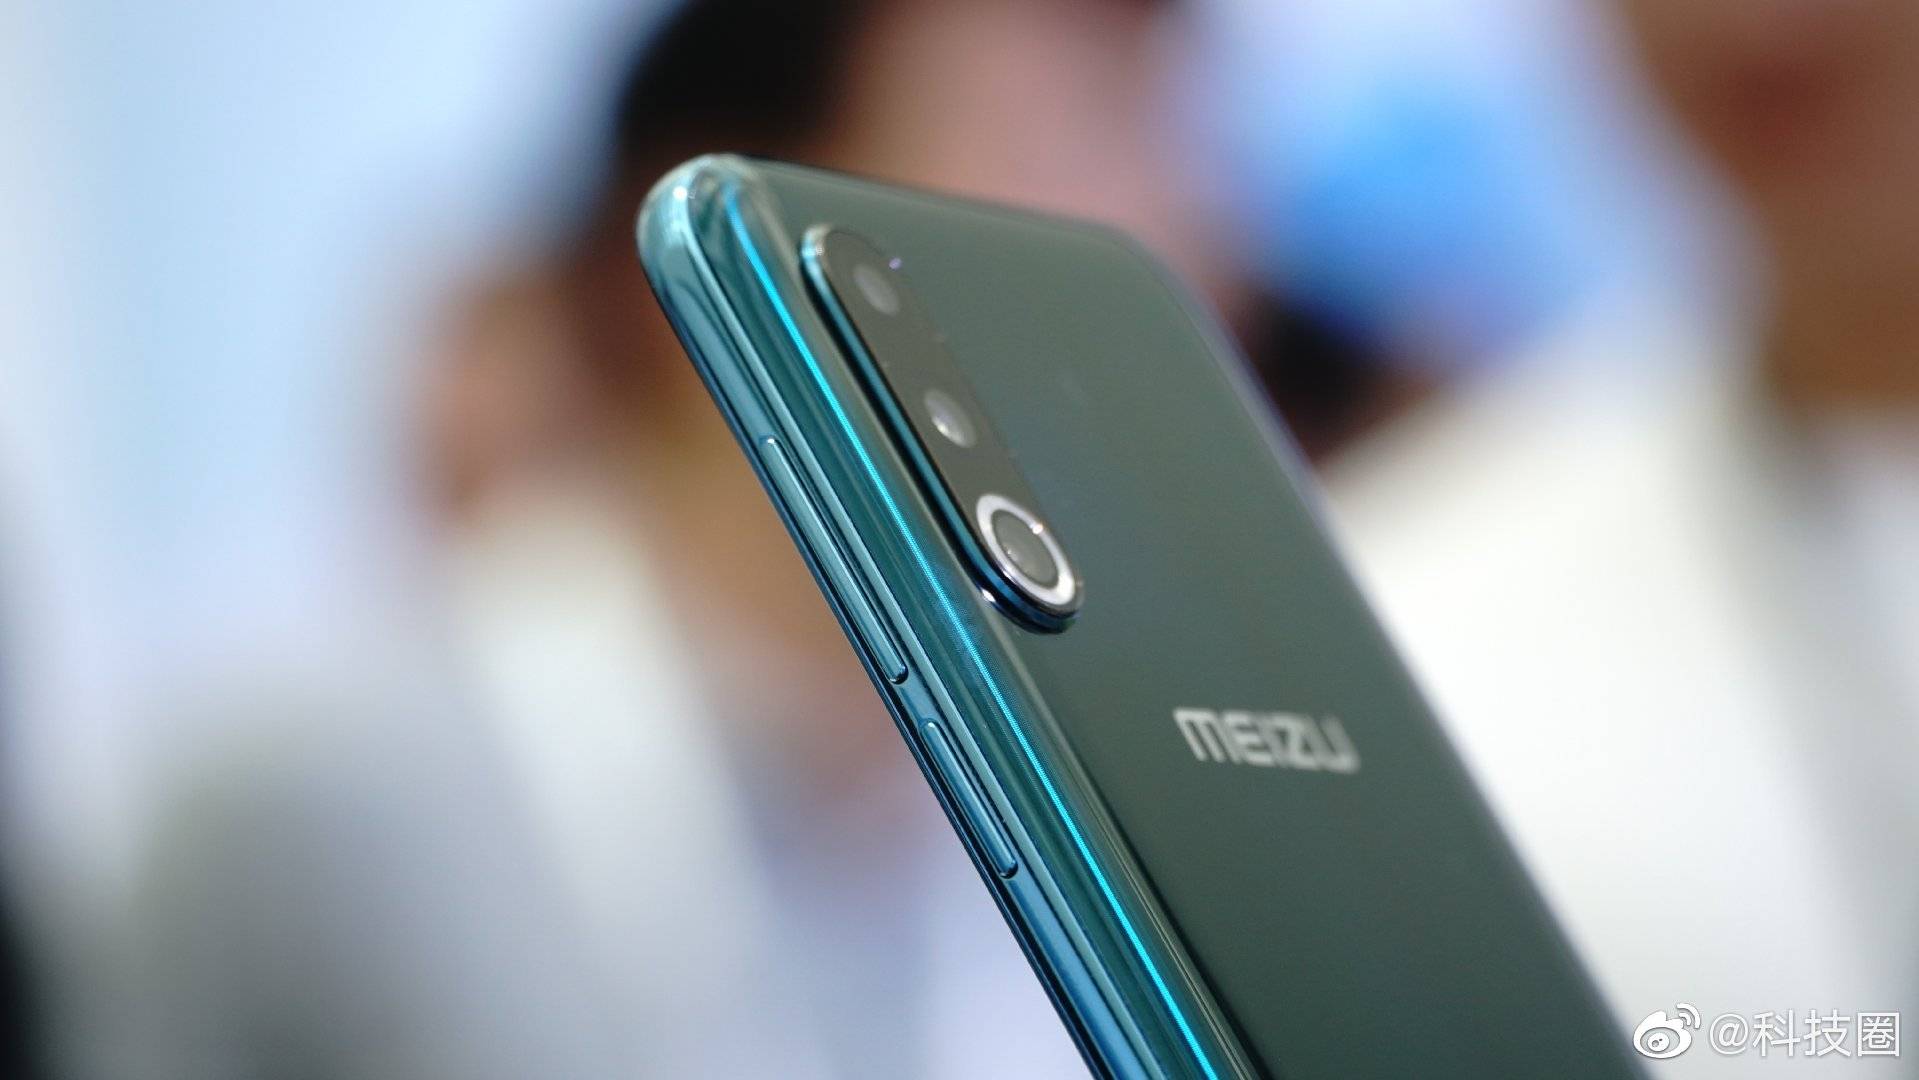 Meizu 16s Pro ra mắt với Snapdragon 855+, 3
camera chính, giá chỉ từ 8.7 triệu